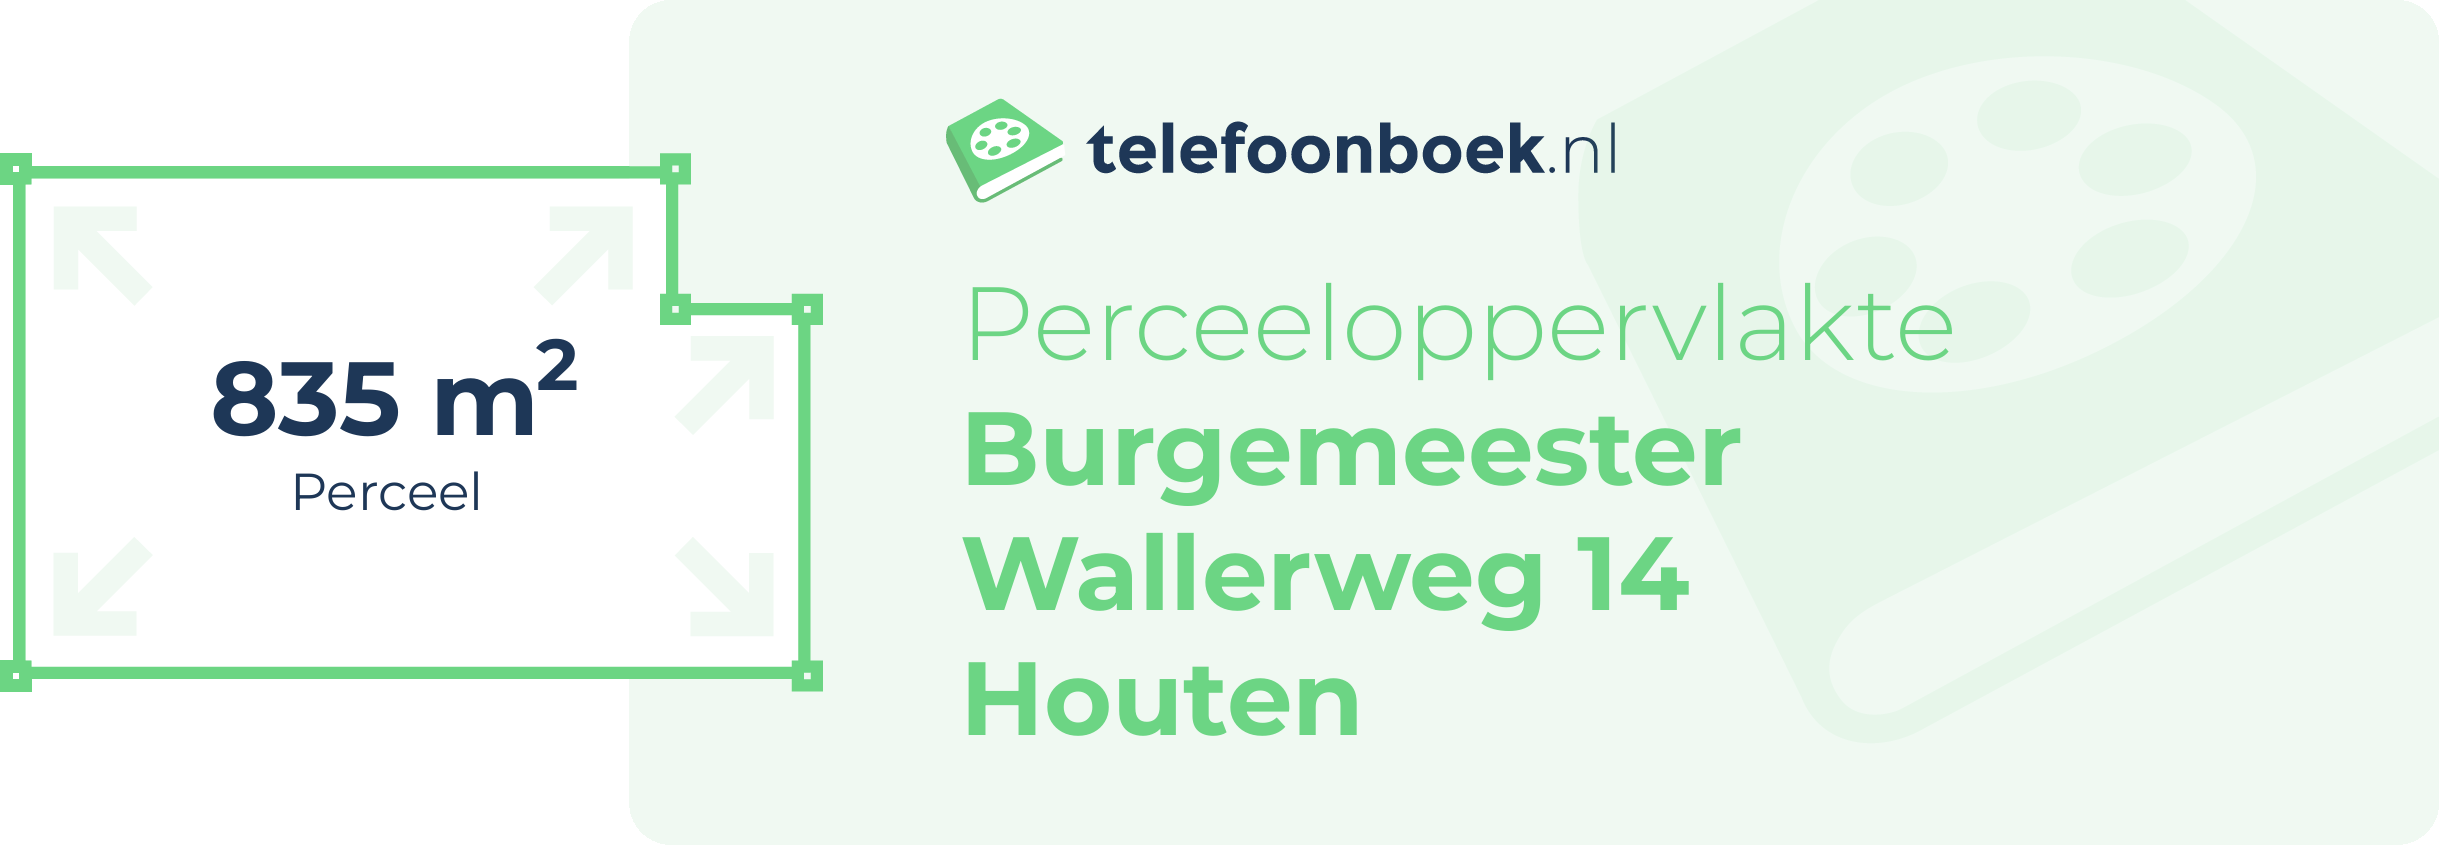 Perceeloppervlakte Burgemeester Wallerweg 14 Houten